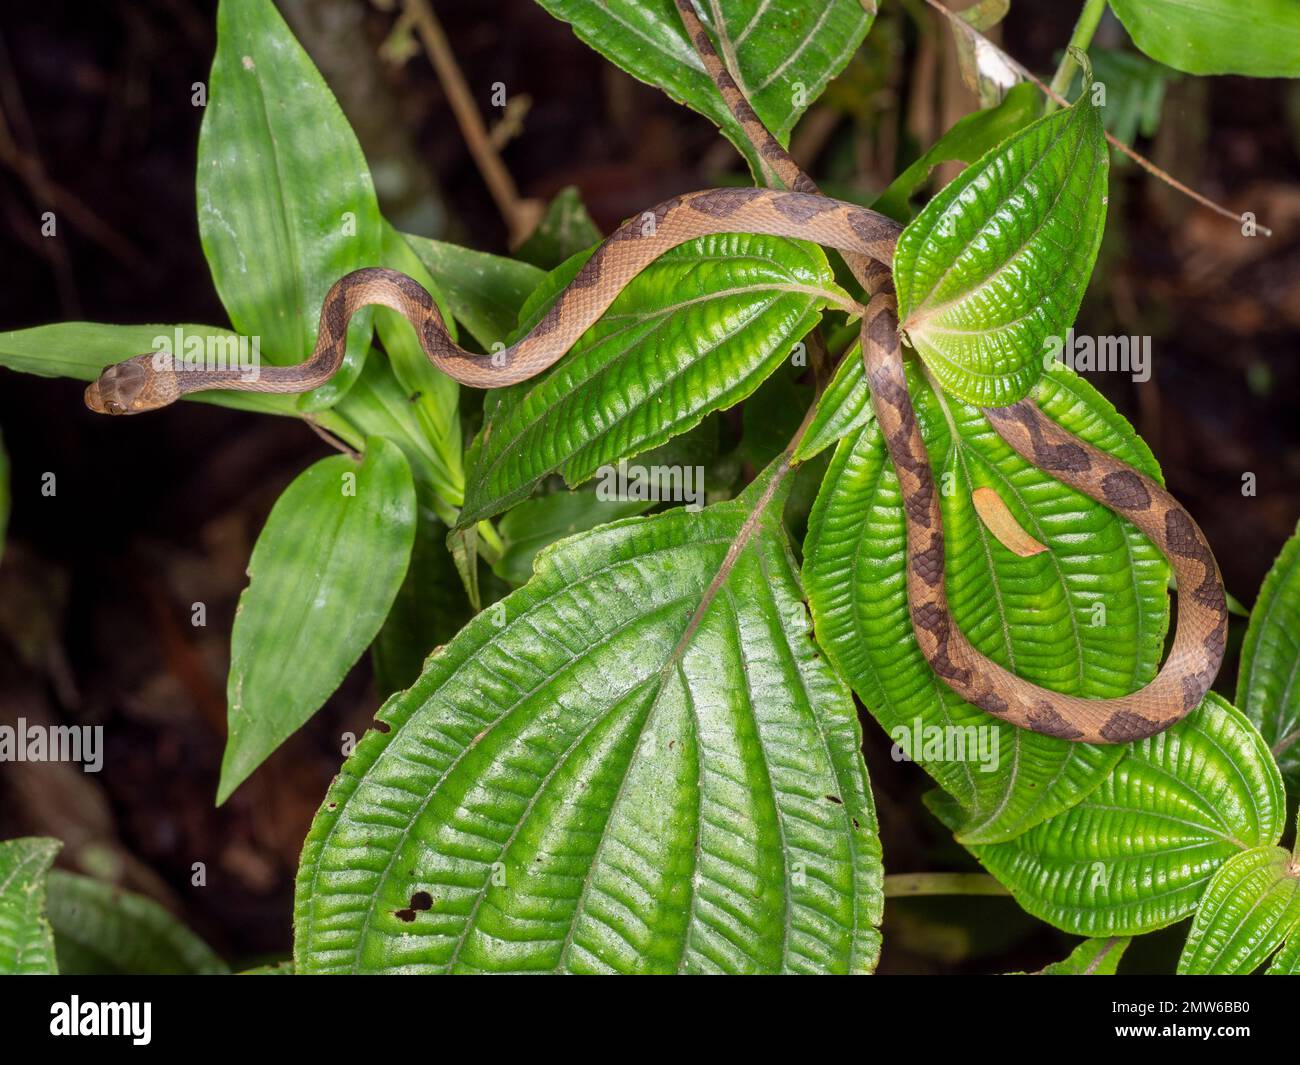 La couleuvre Ã oeil de chat commun (Leptodeira annulata) acticve de nuit dans la forêt tropicale d'une famille d'arbustes Melastomataceae, province d'Orellana, Equateur Banque D'Images